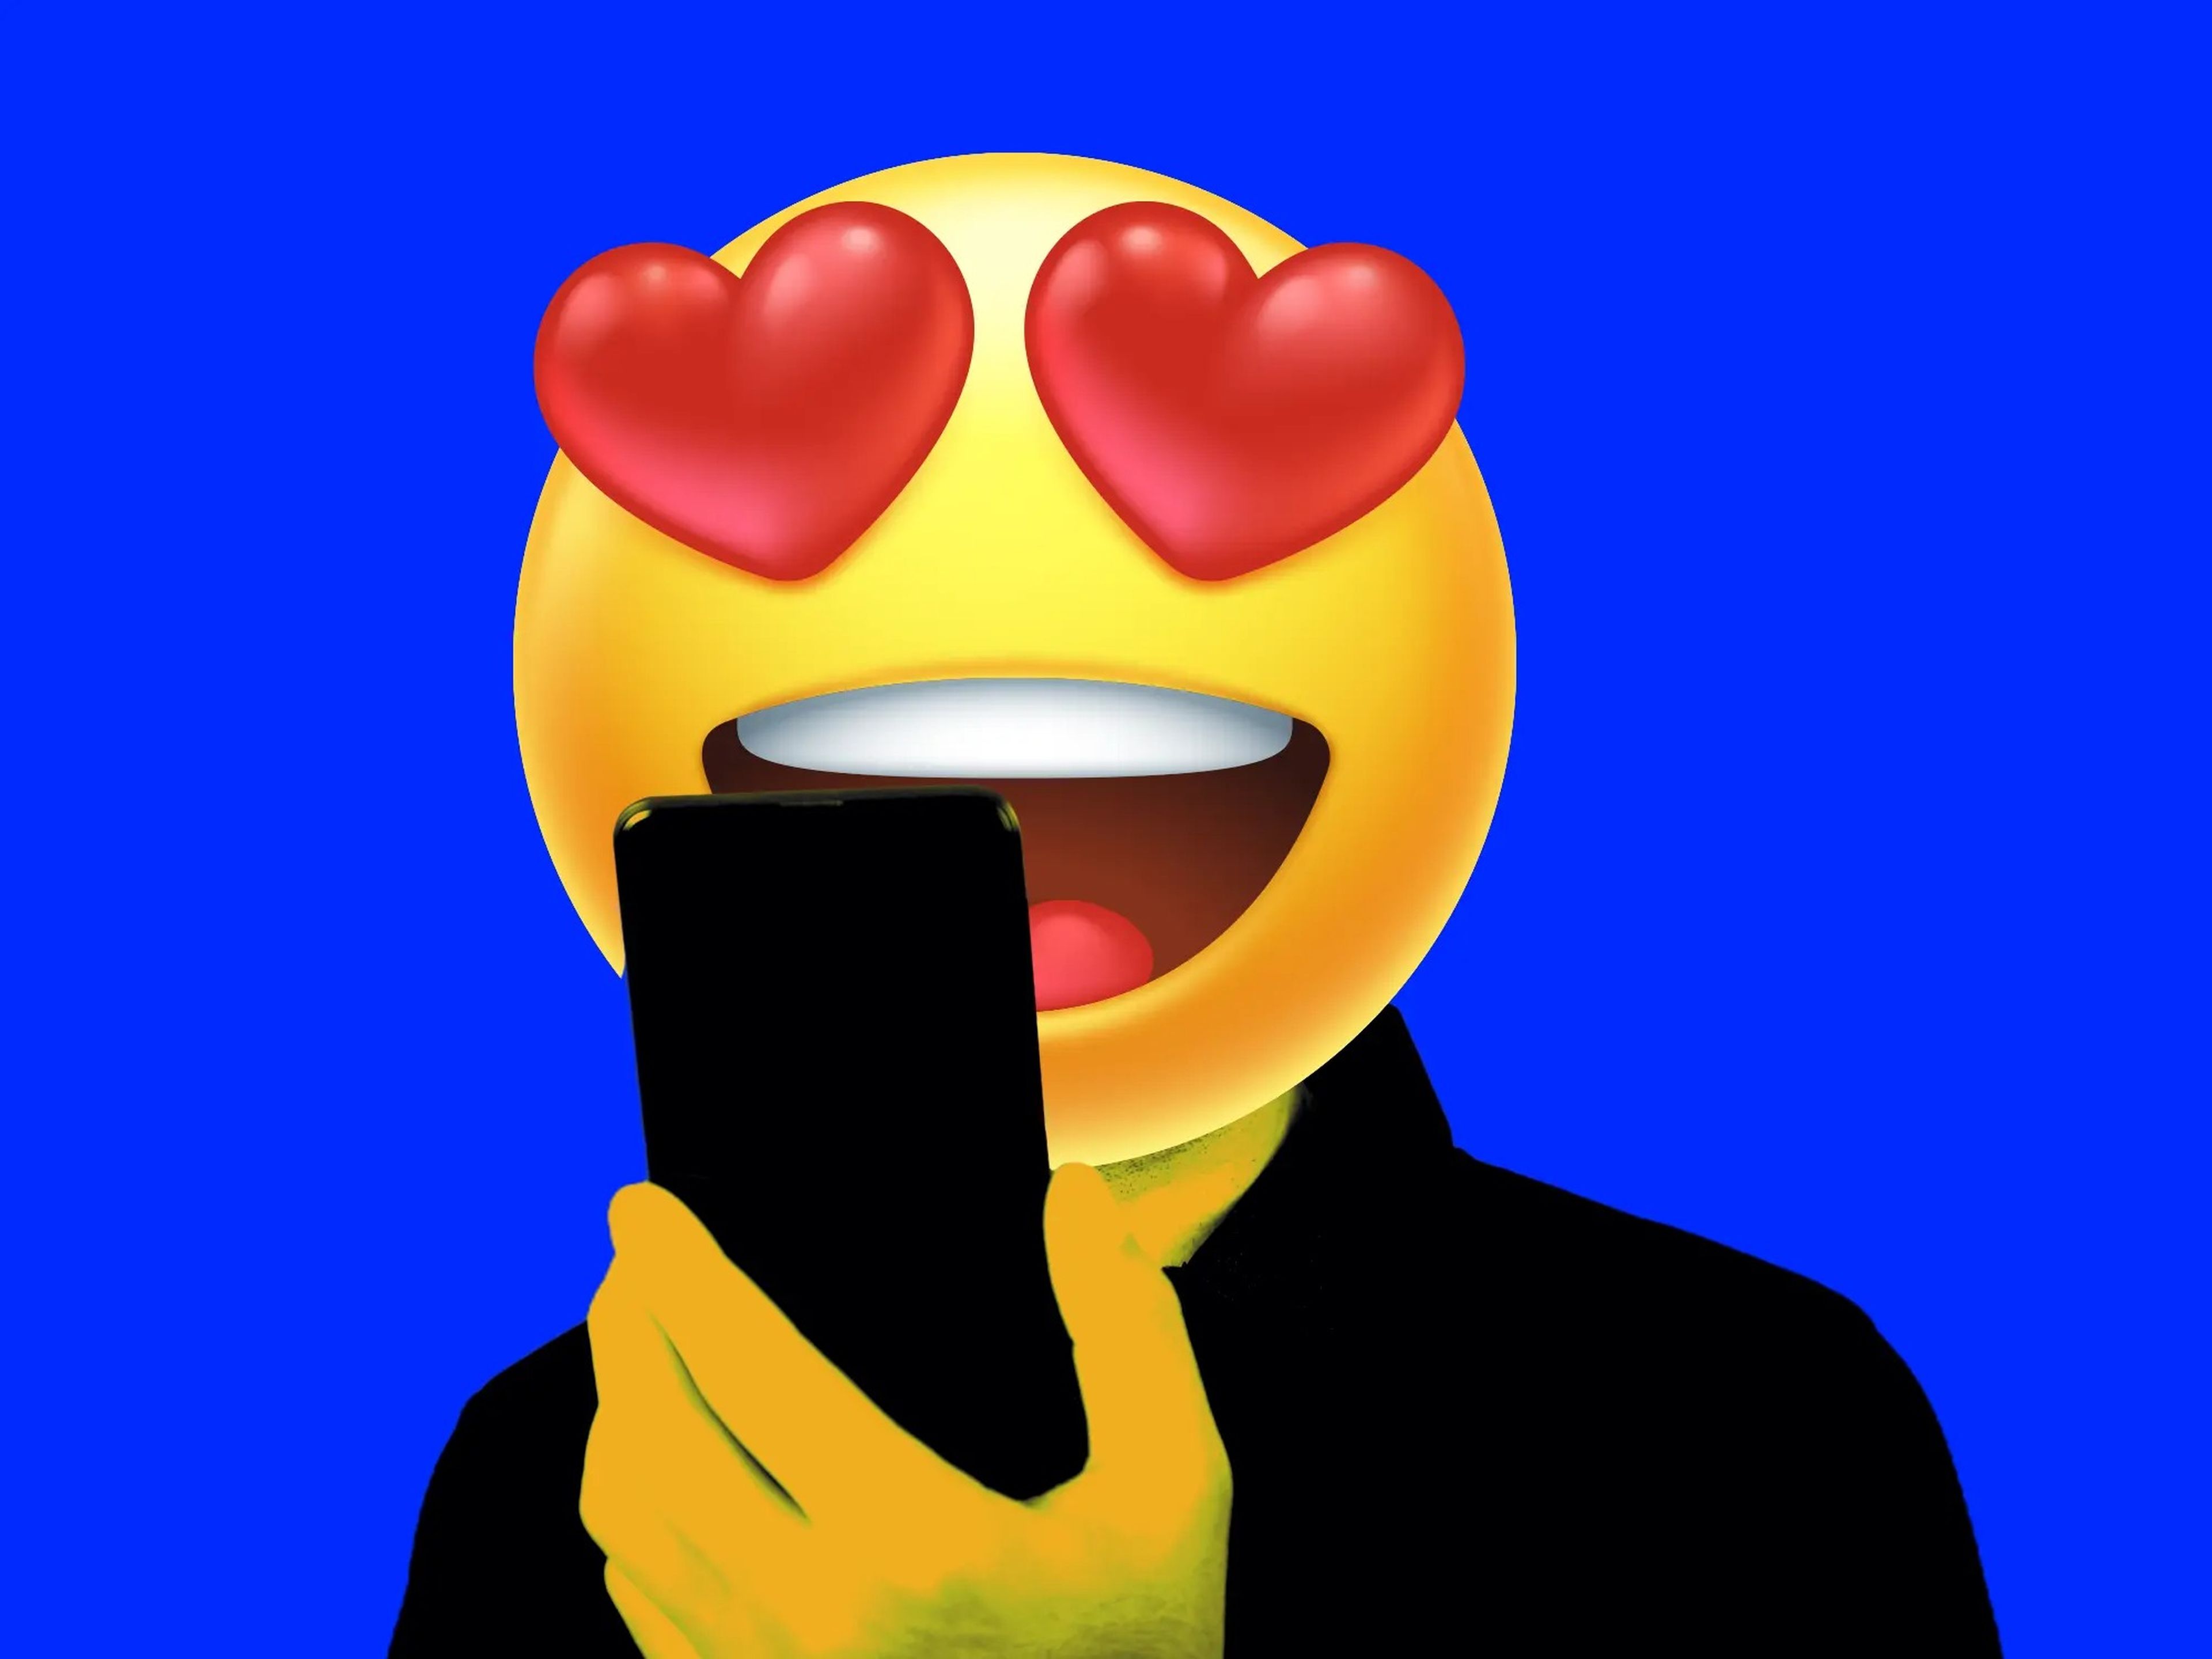 A heart eyes emoji looking at a phone